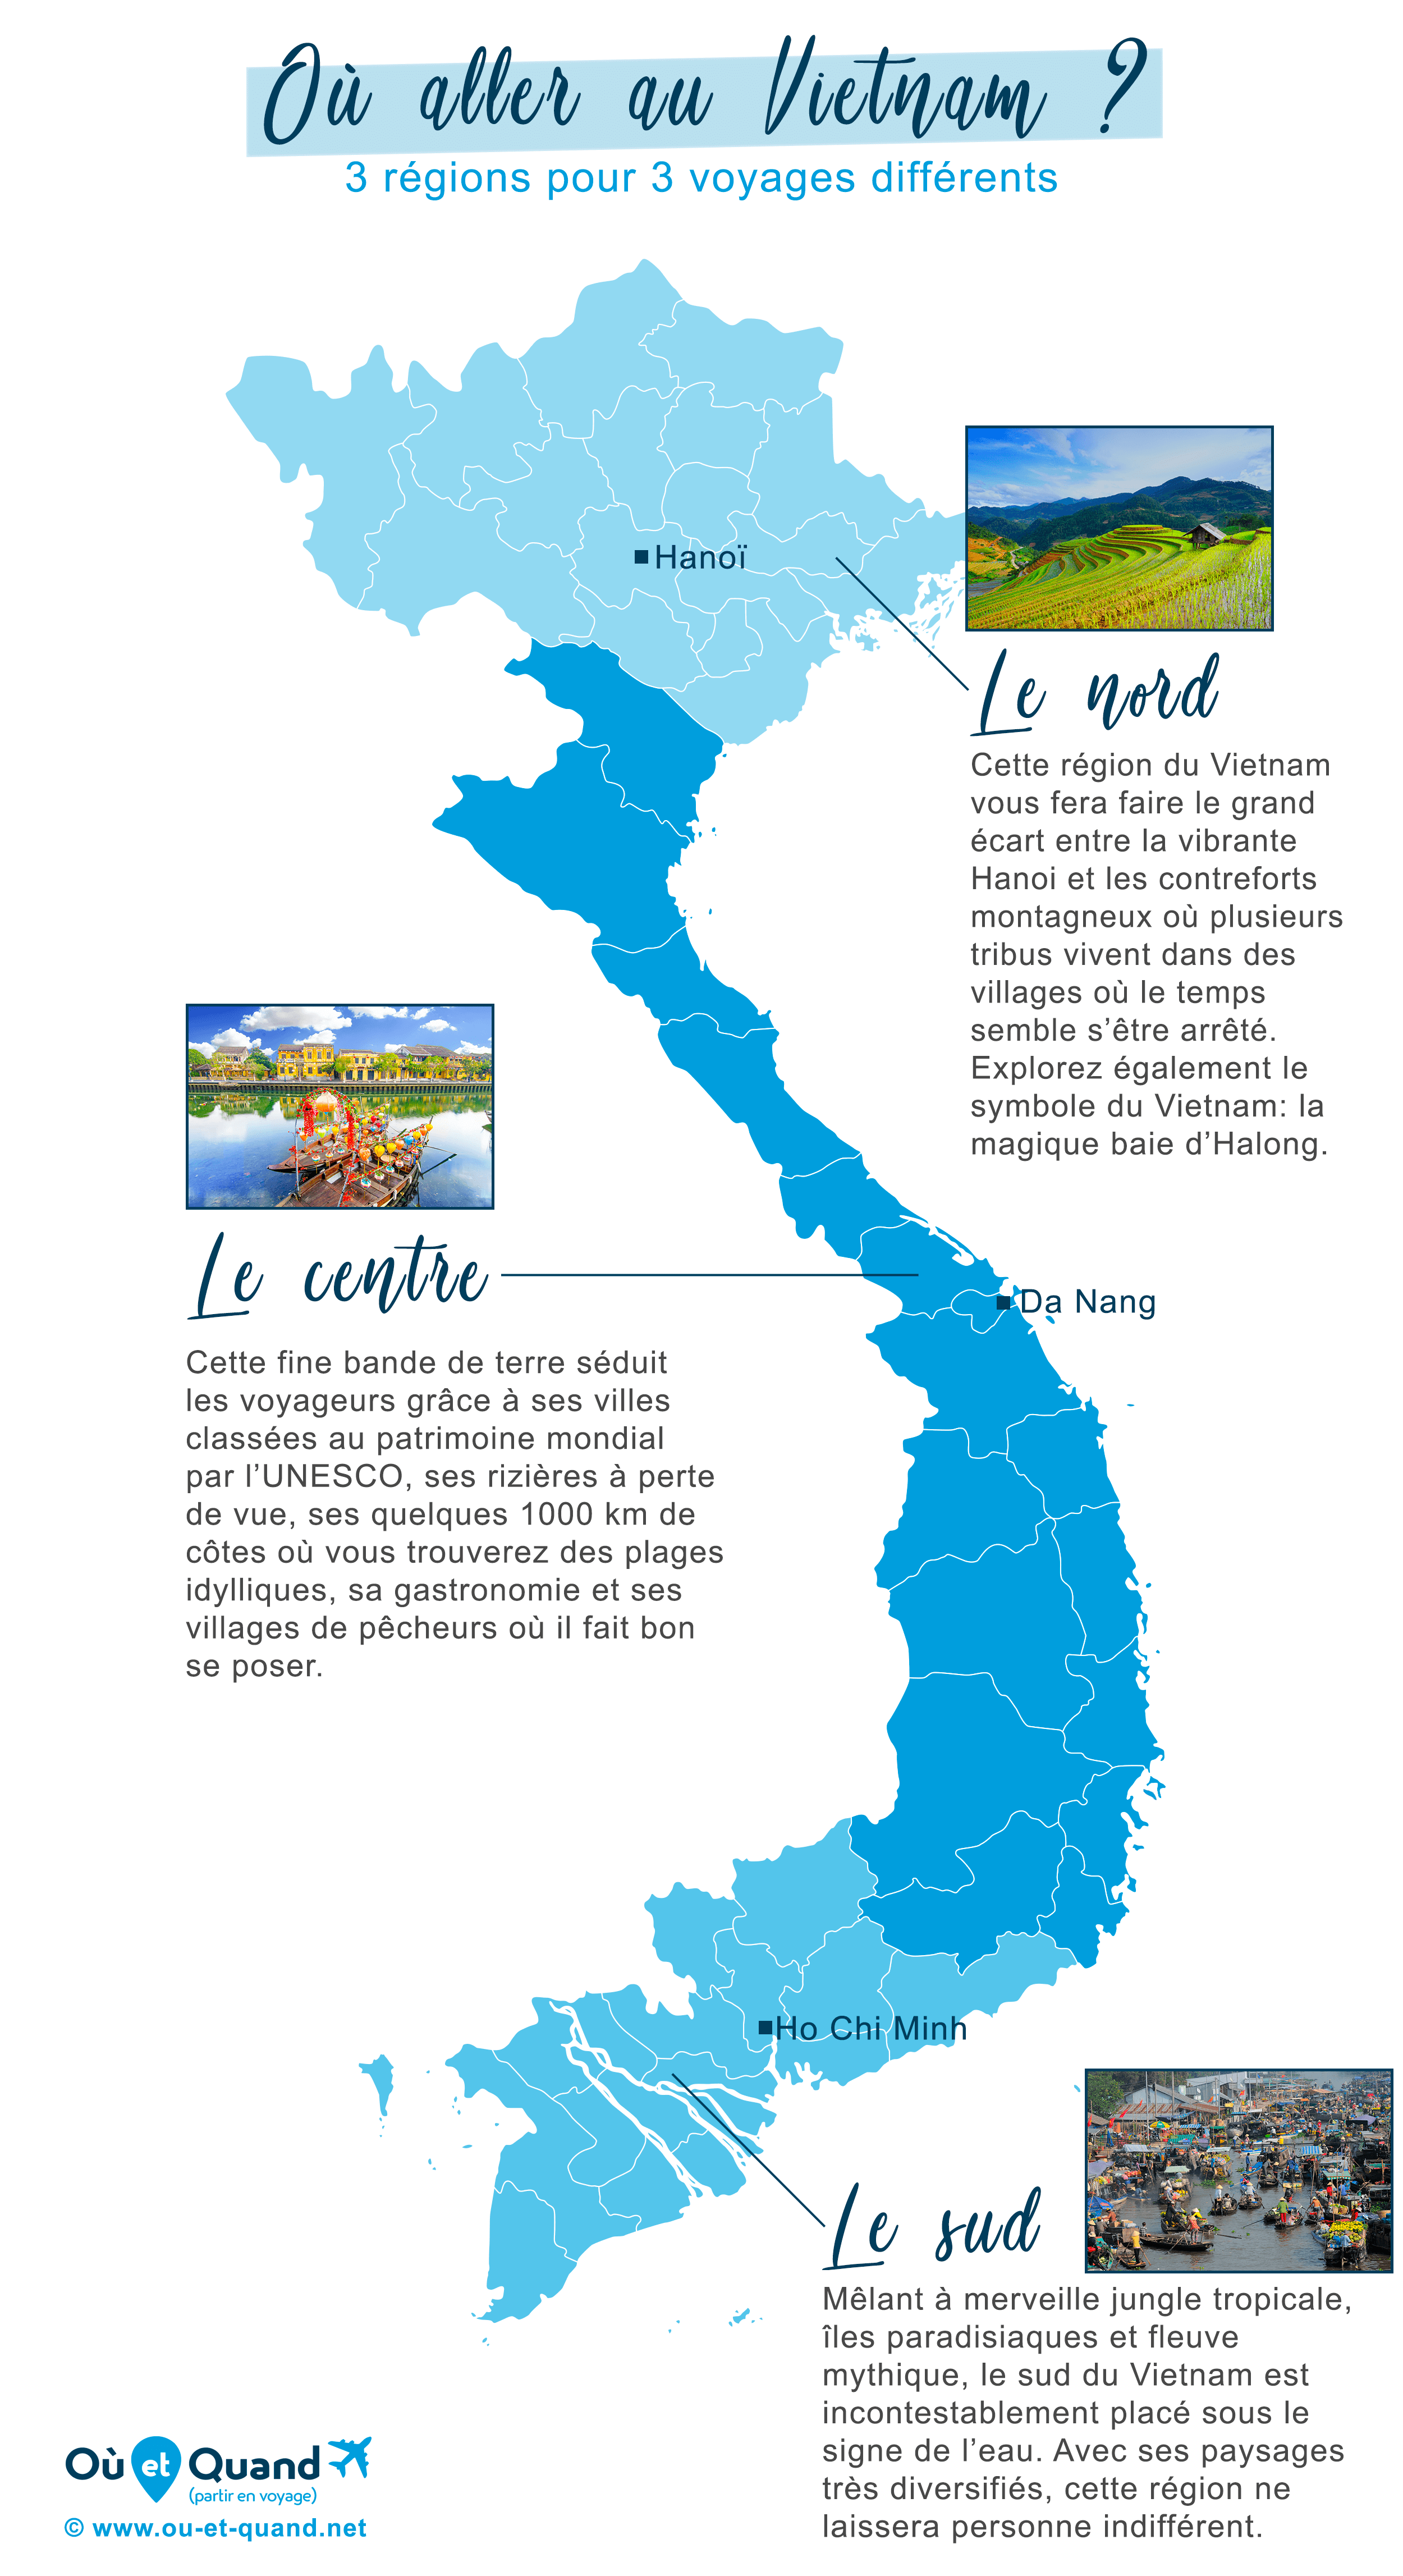 Notre sélection des régions où aller au Vietnam